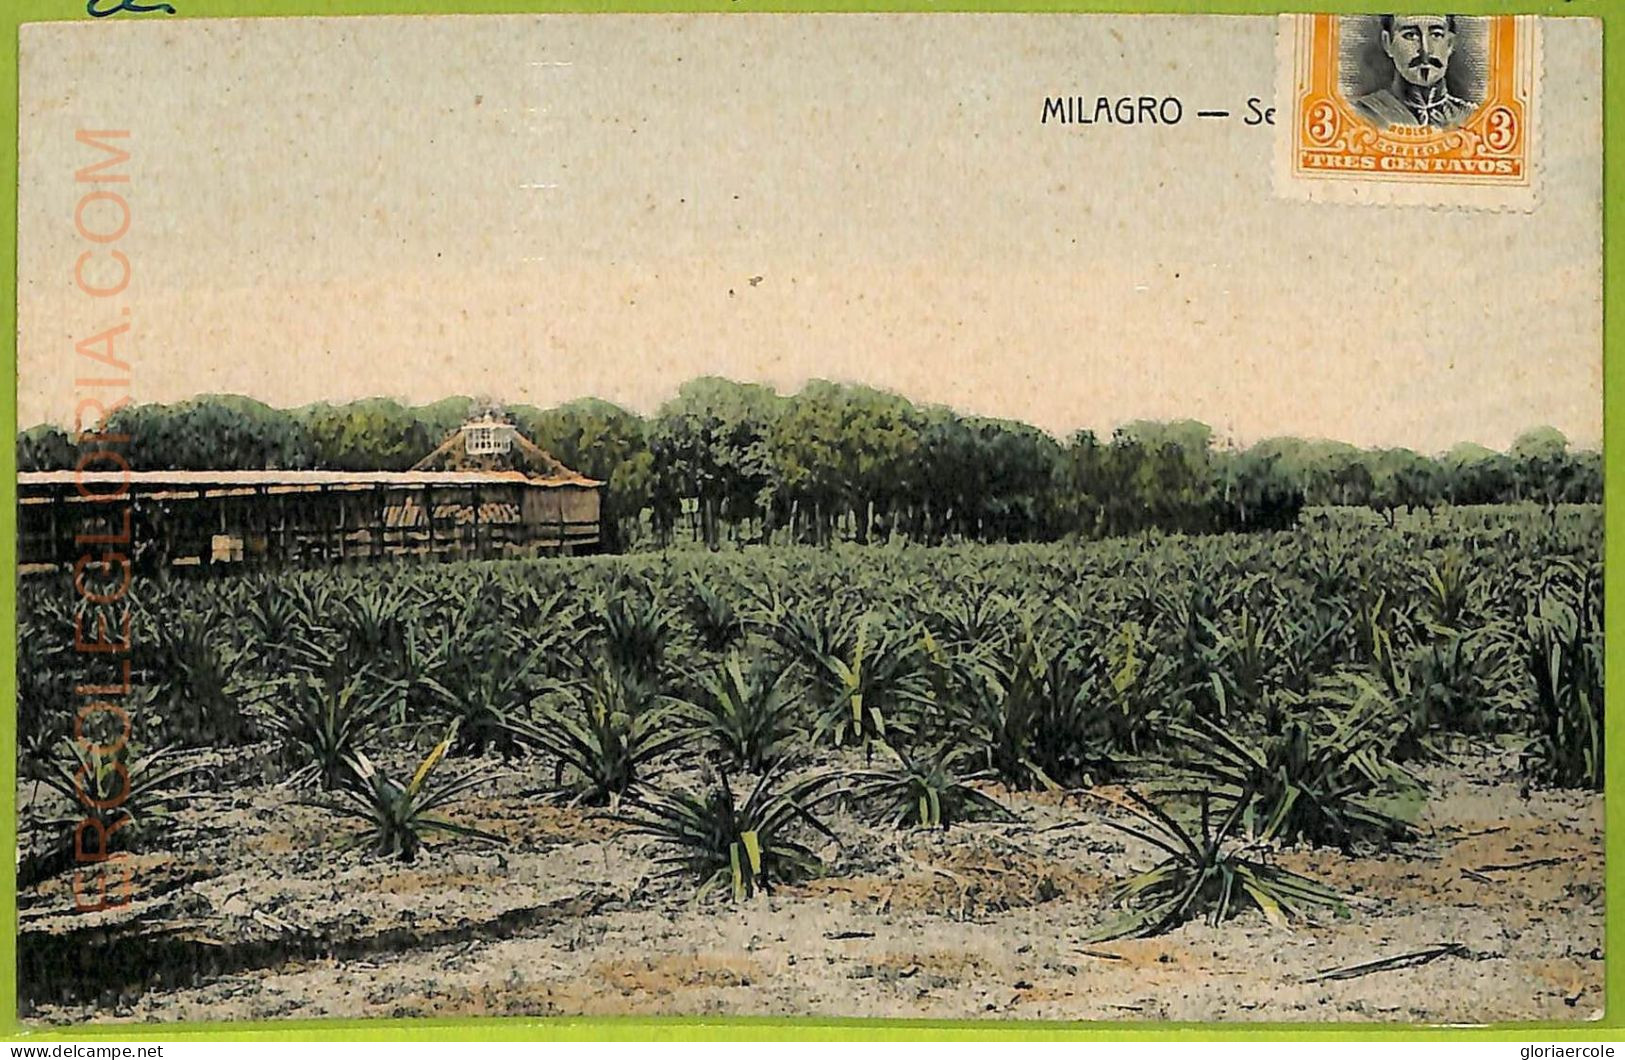 Af2428 - ECUADOR - Vintage Postcard - Milagro - 1907 - Equateur